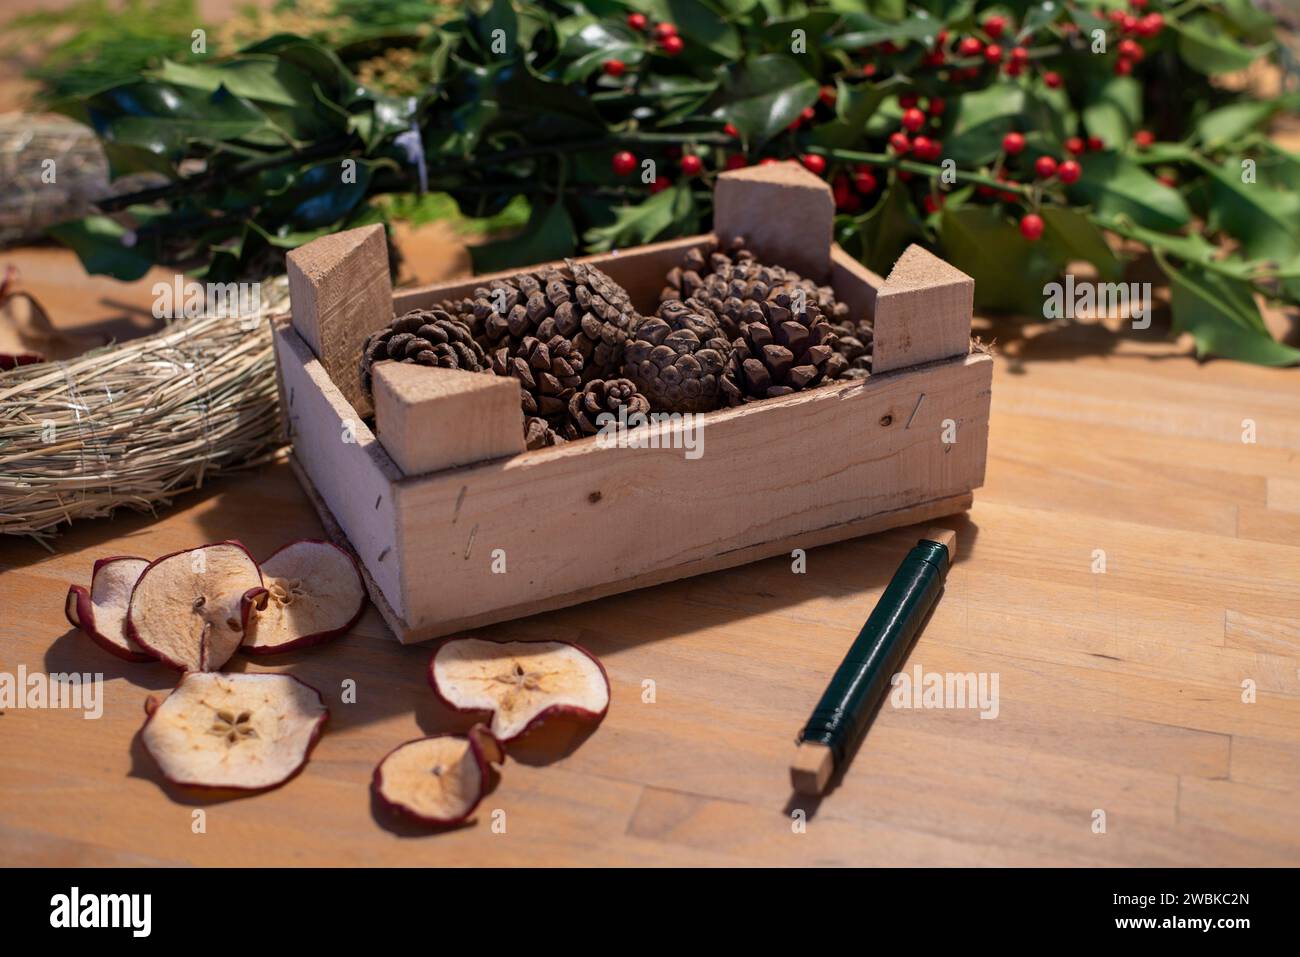 Gli spazi vuoti di ghirlanda, le mele di pino e l'holly giacciono su un tavolo. Gli utensili sono utilizzati per creare una corona d'avvento autolegata. Foto Stock